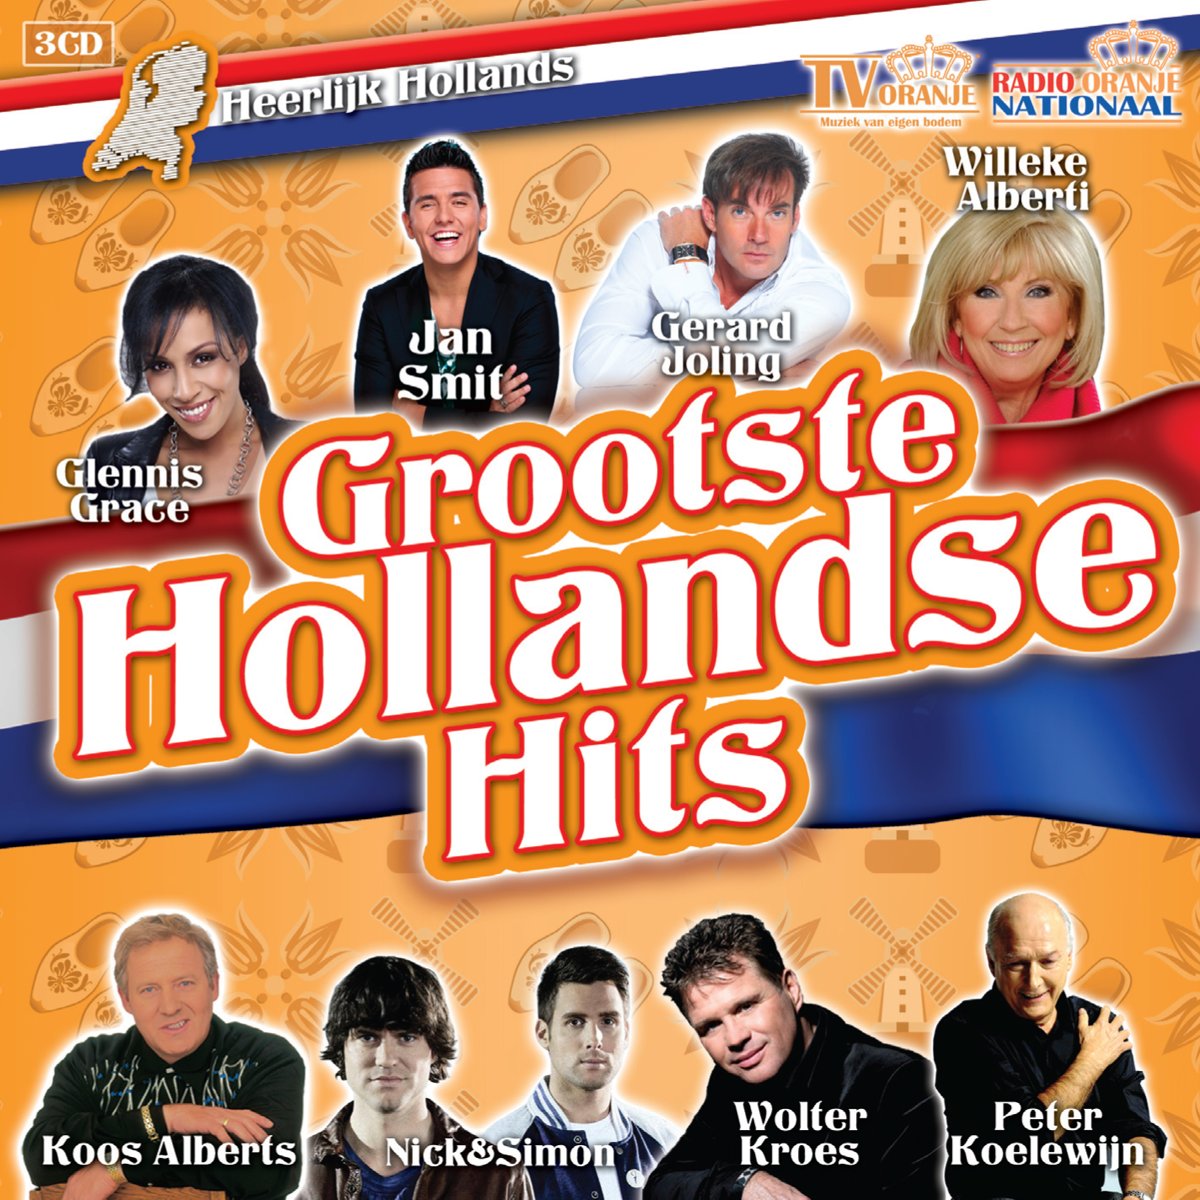 Heerlijk Hollands: Hollandse Hits - dutchcharts.nl